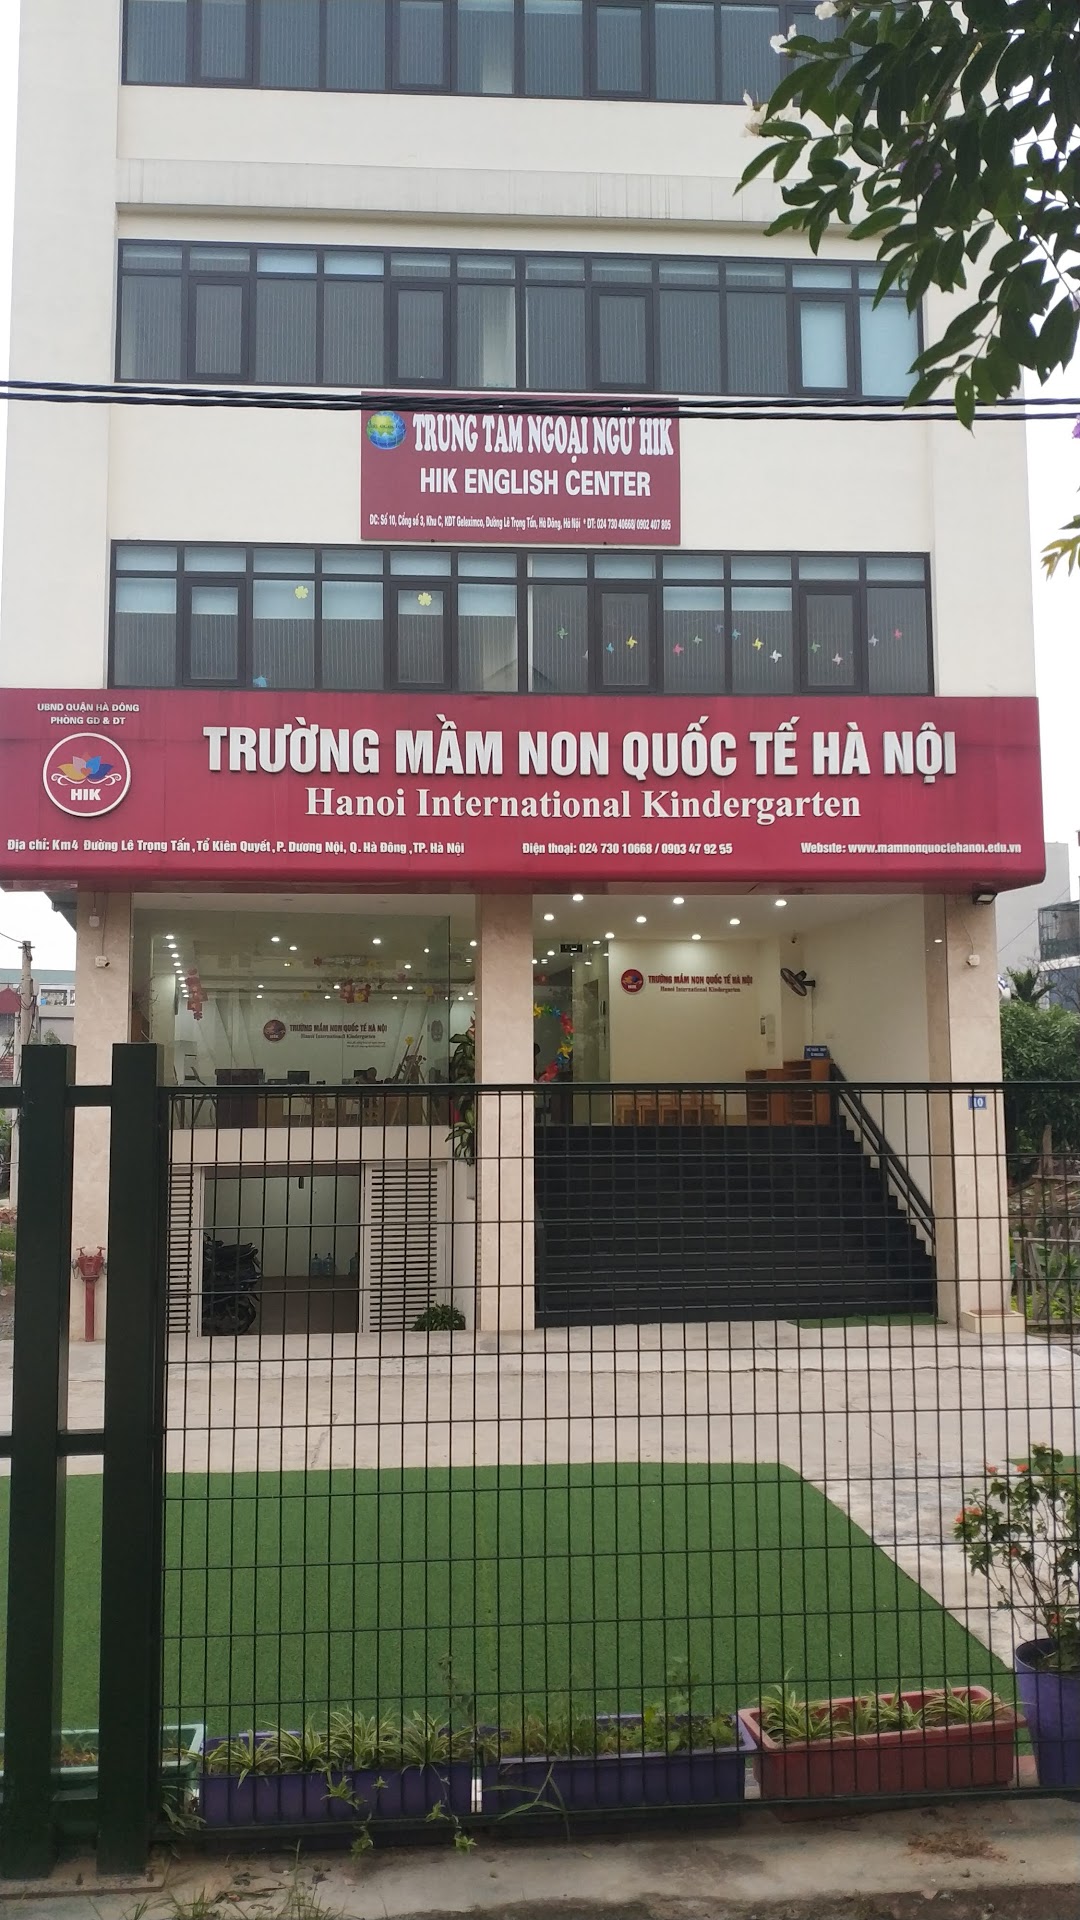 Hanoi International Kindergarten (HIK)